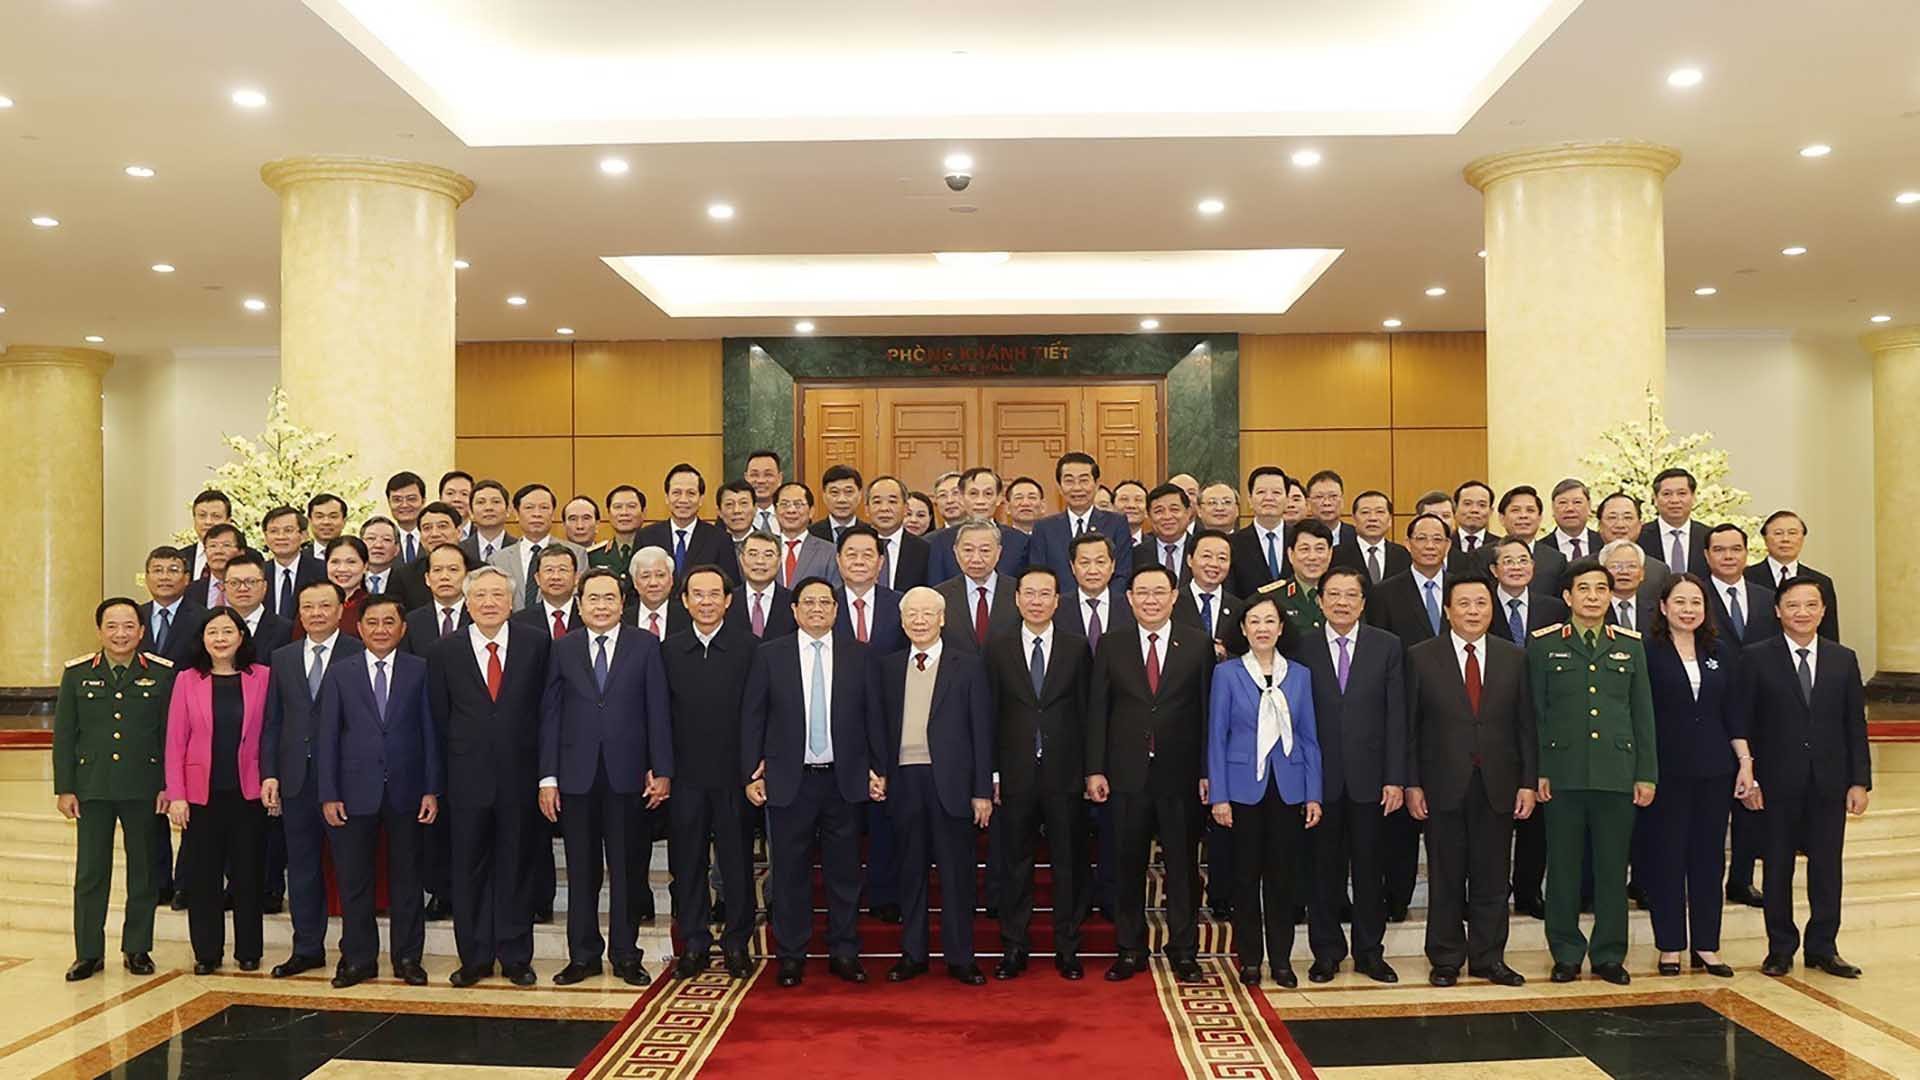 Tổng Bí thư Nguyễn Phú Trọng chủ trì phiên họp đầu tiên Tiểu ban Văn kiện Đại hội XIV của Đảng